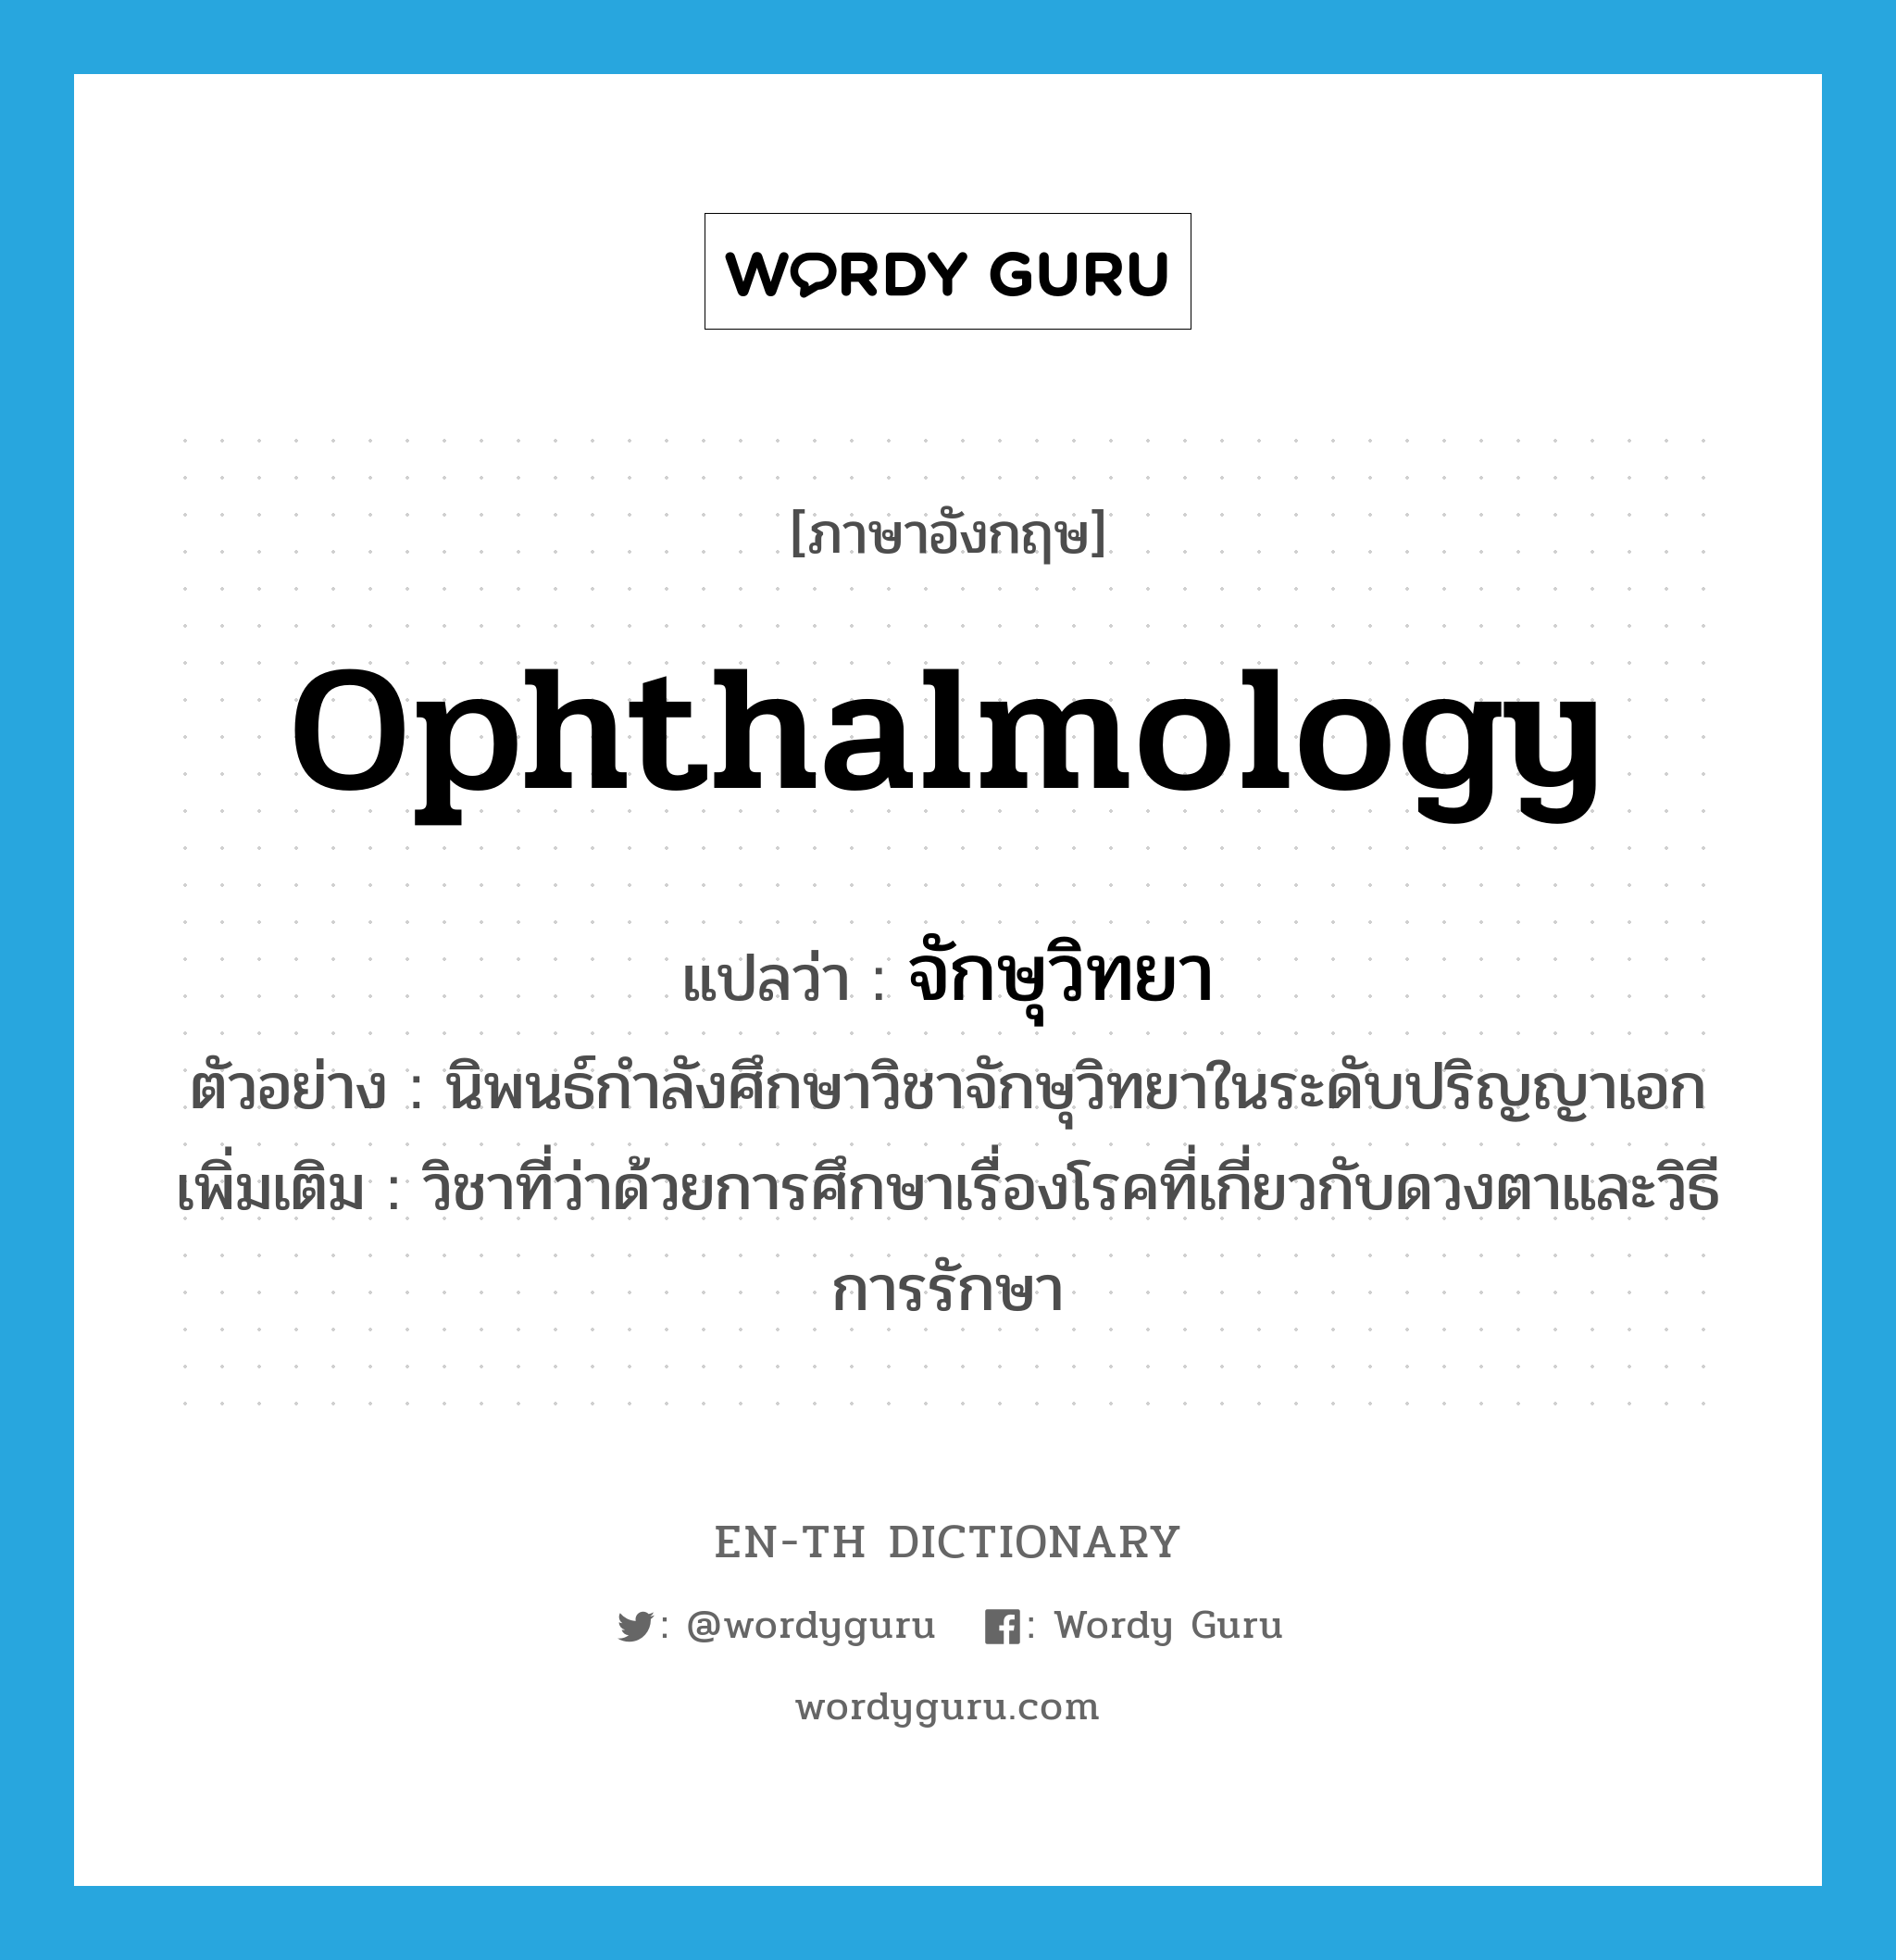 ophthalmology แปลว่า?, คำศัพท์ภาษาอังกฤษ ophthalmology แปลว่า จักษุวิทยา ประเภท N ตัวอย่าง นิพนธ์กำลังศึกษาวิชาจักษุวิทยาในระดับปริญญาเอก เพิ่มเติม วิชาที่ว่าด้วยการศึกษาเรื่องโรคที่เกี่ยวกับดวงตาและวิธีการรักษา หมวด N